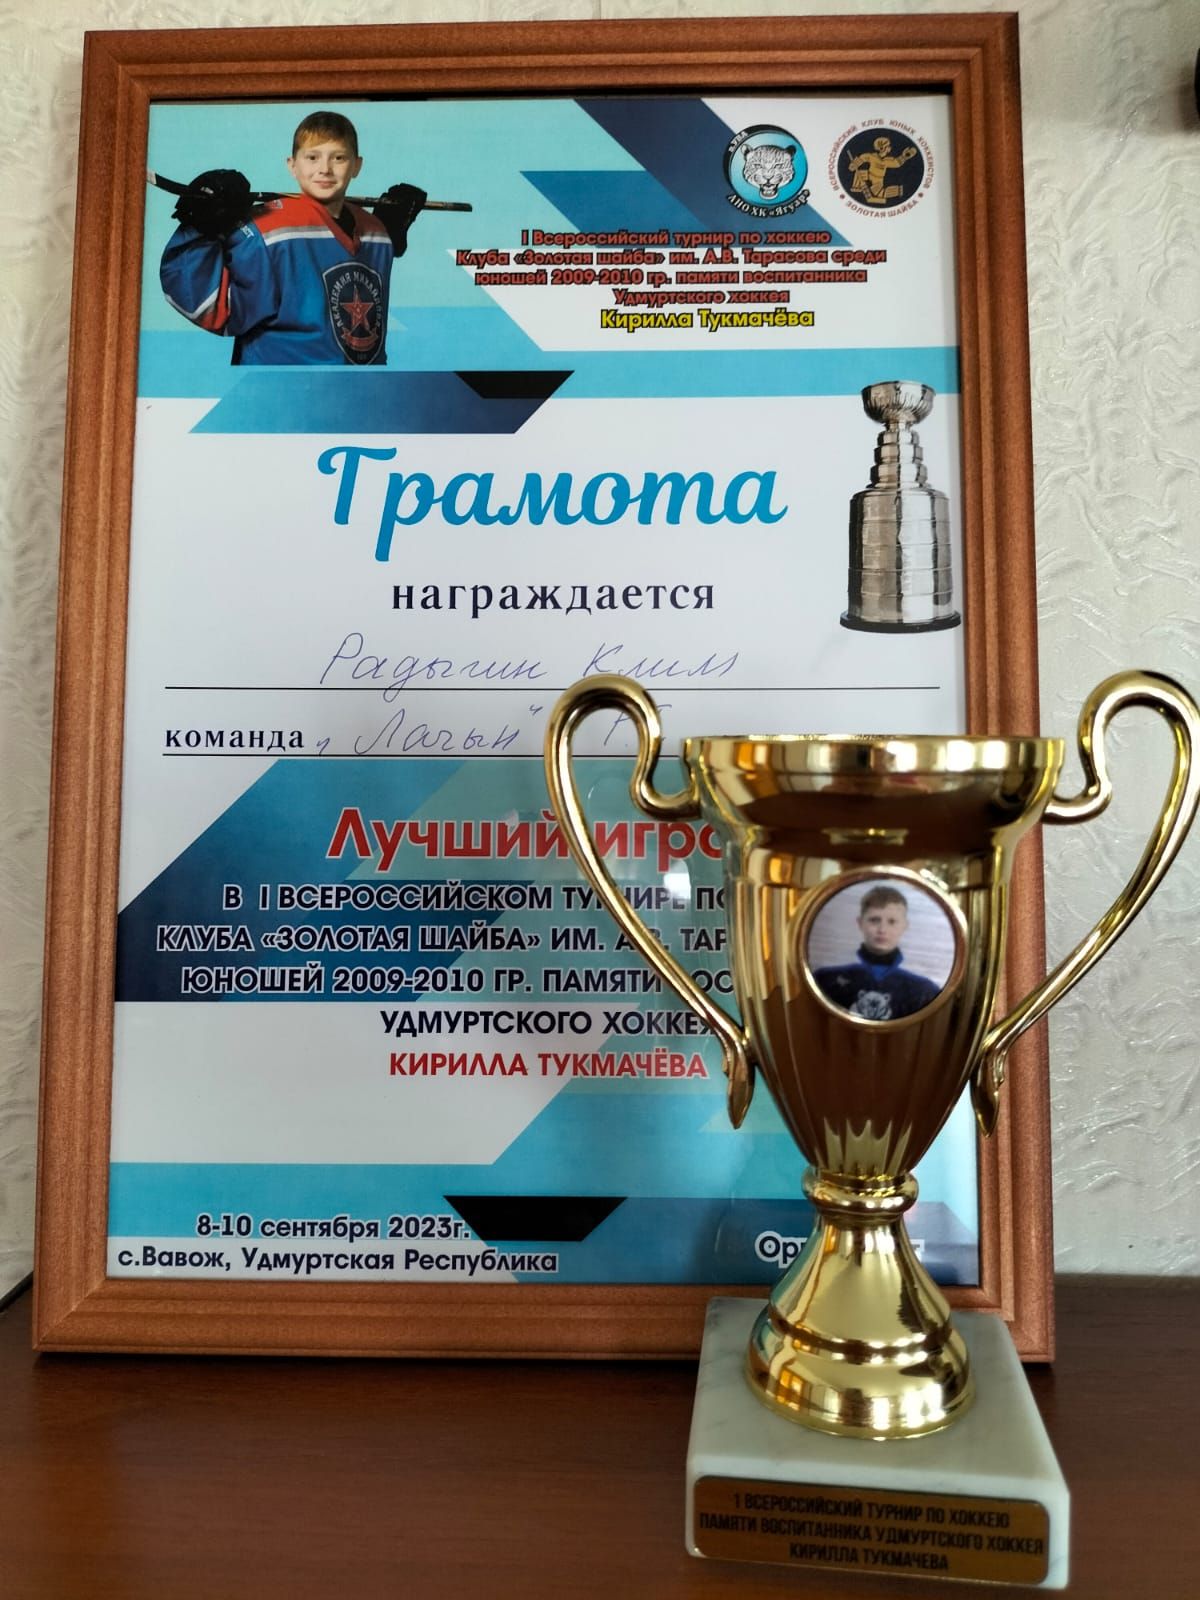 «Лачын» хоккейчылары Удмуртиядә узган Бөтенроссия турнирында көмеш медальгә лаек булды